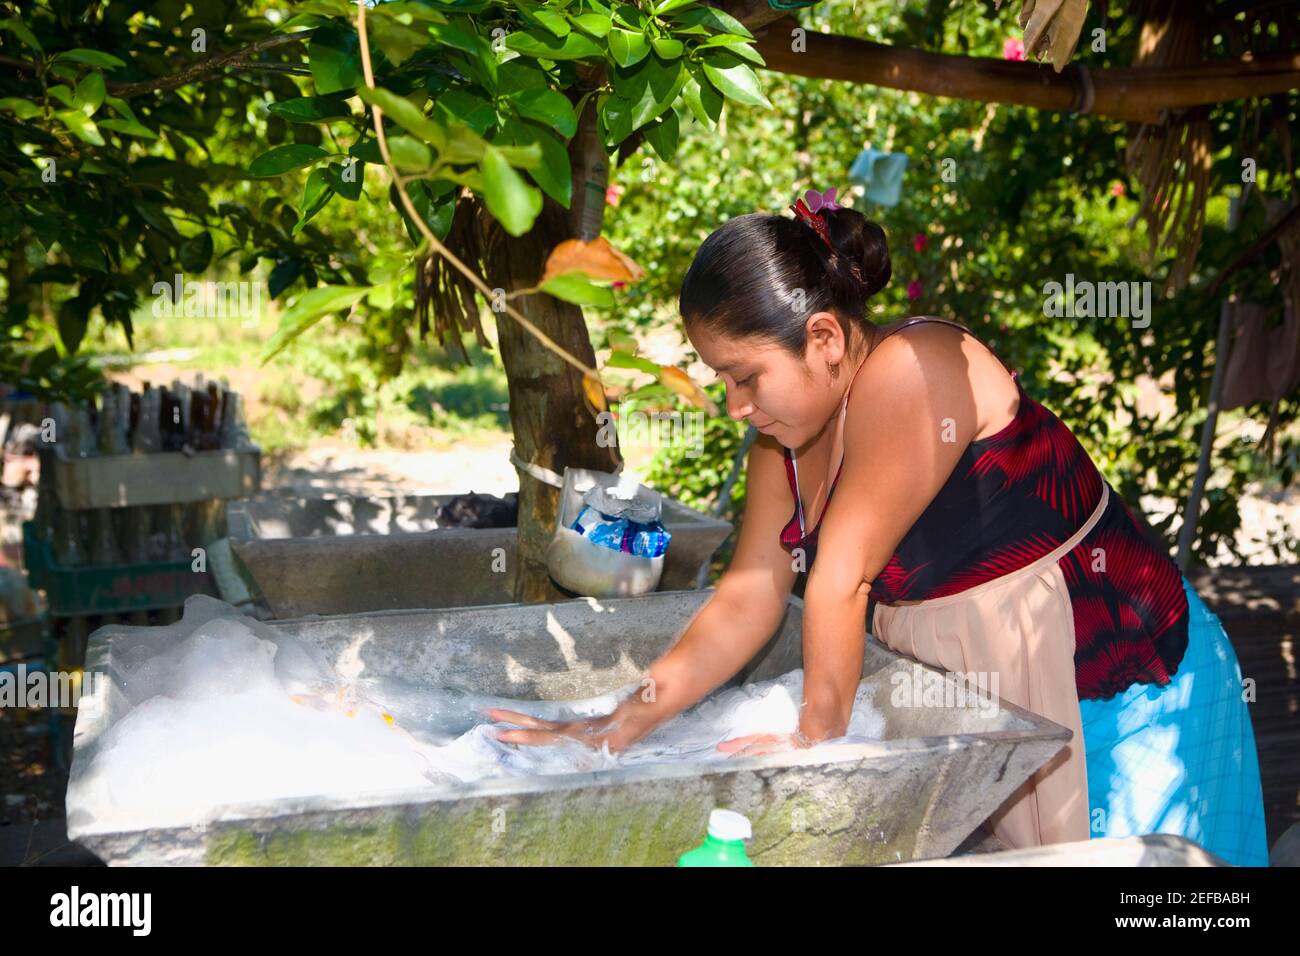 Young woman washing clothes, Papantla, Veracruz, Mexico Stock Photo